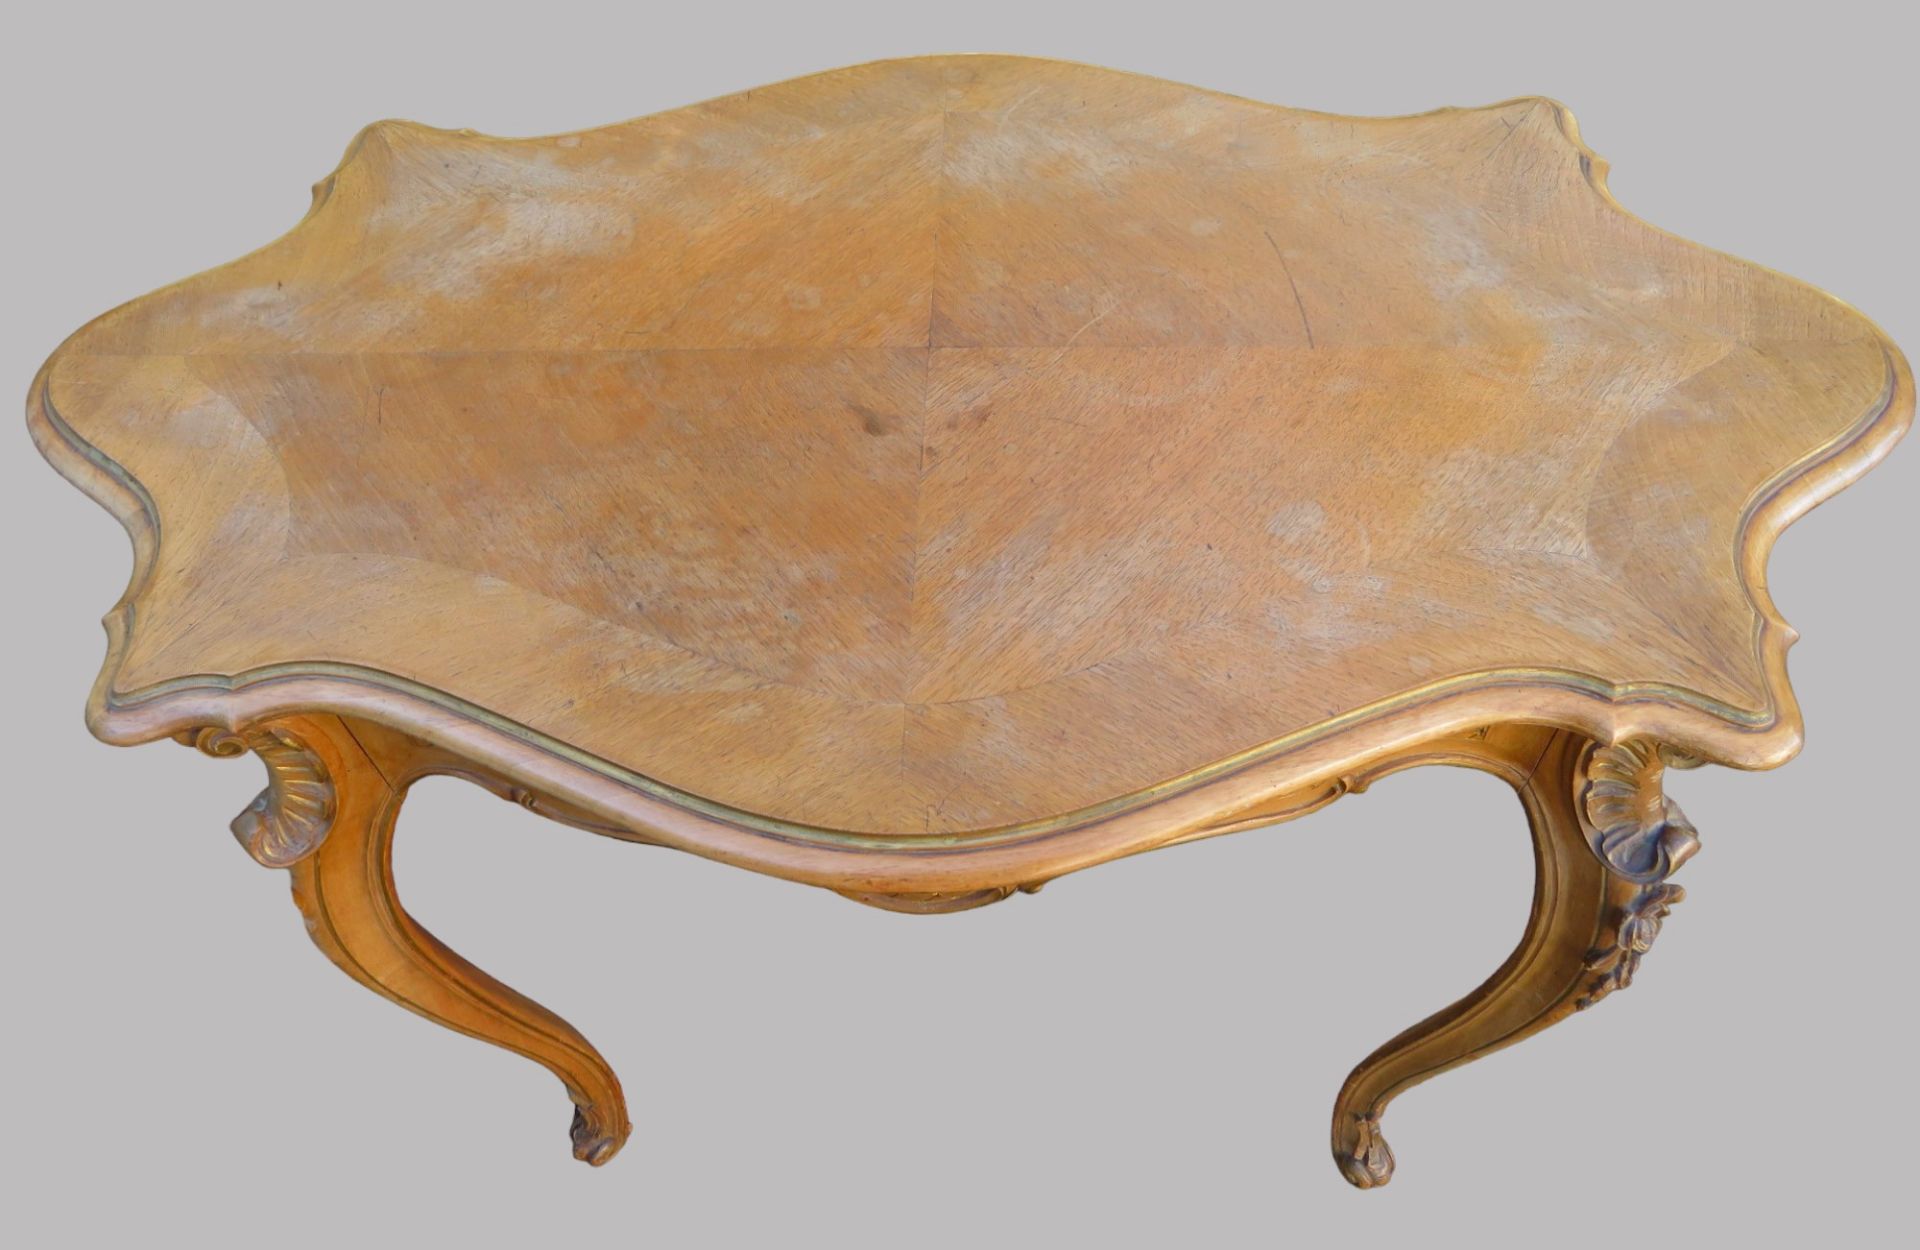 Tisch, Rokokostil, 19. Jahrhundert, Nussbaum beschnitzt, rest.bed., 74 x 90 x 54 cm. - Bild 2 aus 3